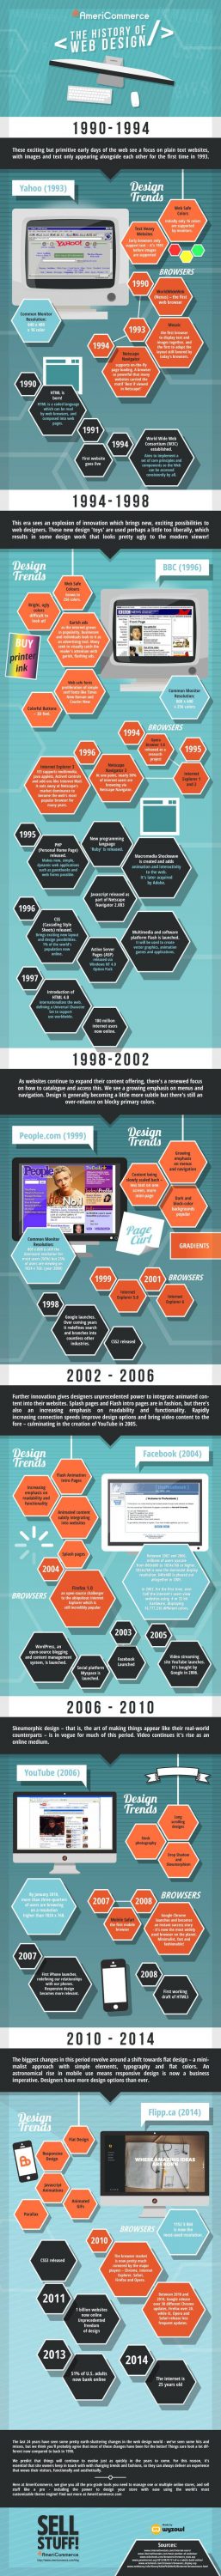 Historia del diseño web infografía